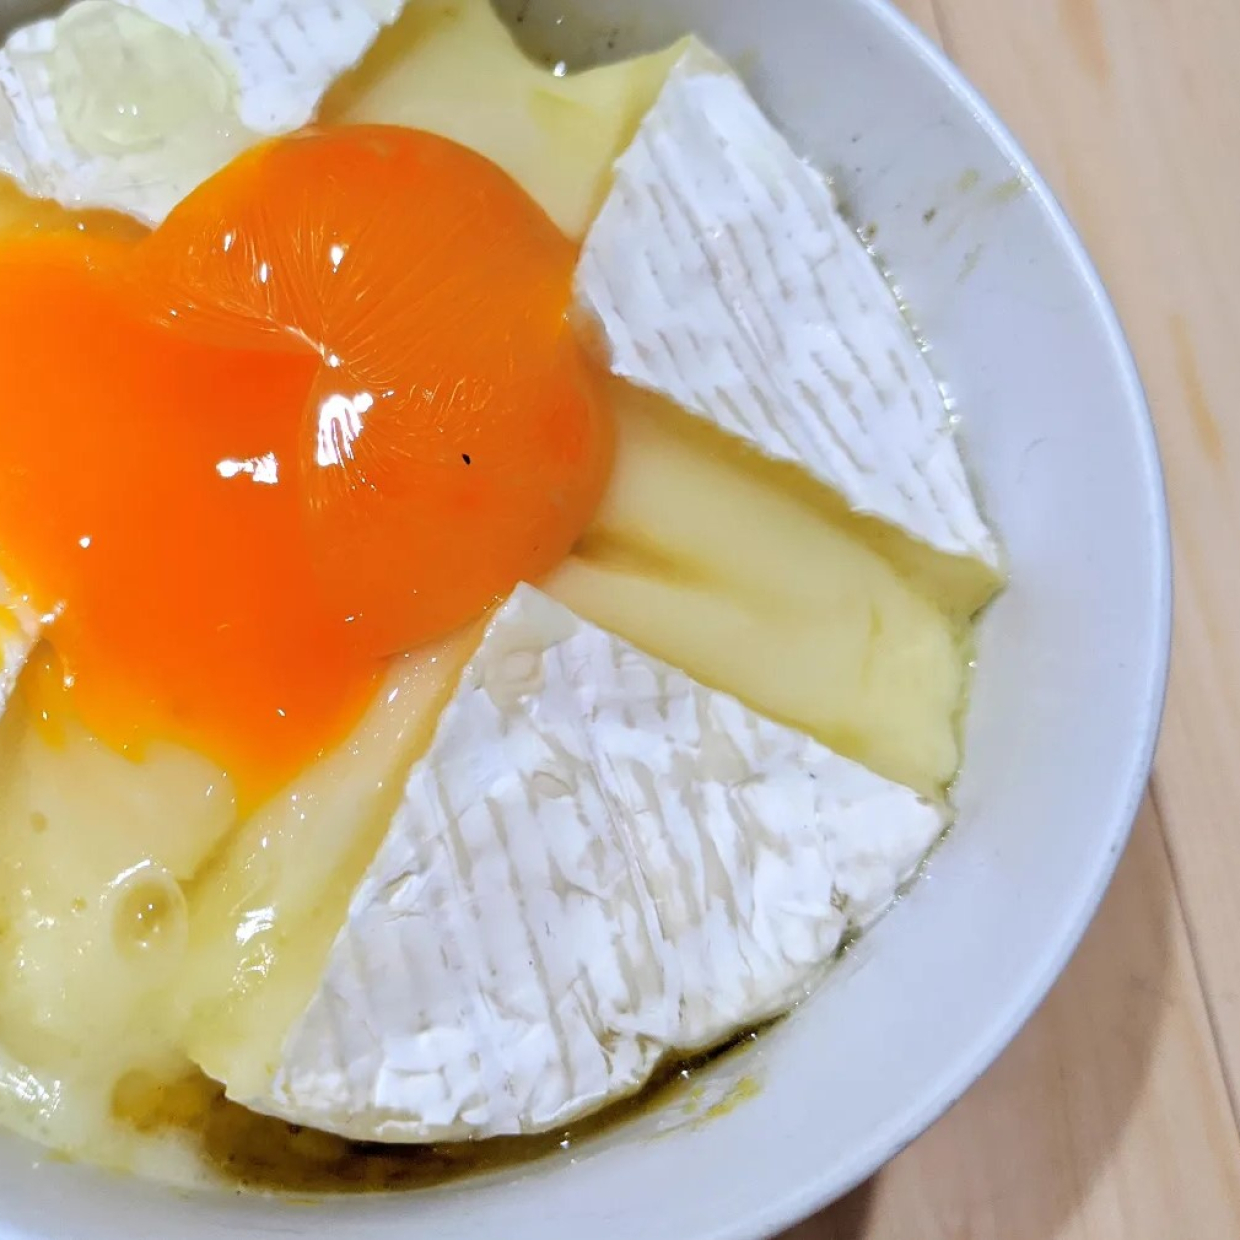  【家事ヤロウレシピ】卵かけご飯にカマンベールチーズを丸ごと1個のせた旨味の魂な「背徳めし」作ってみた 